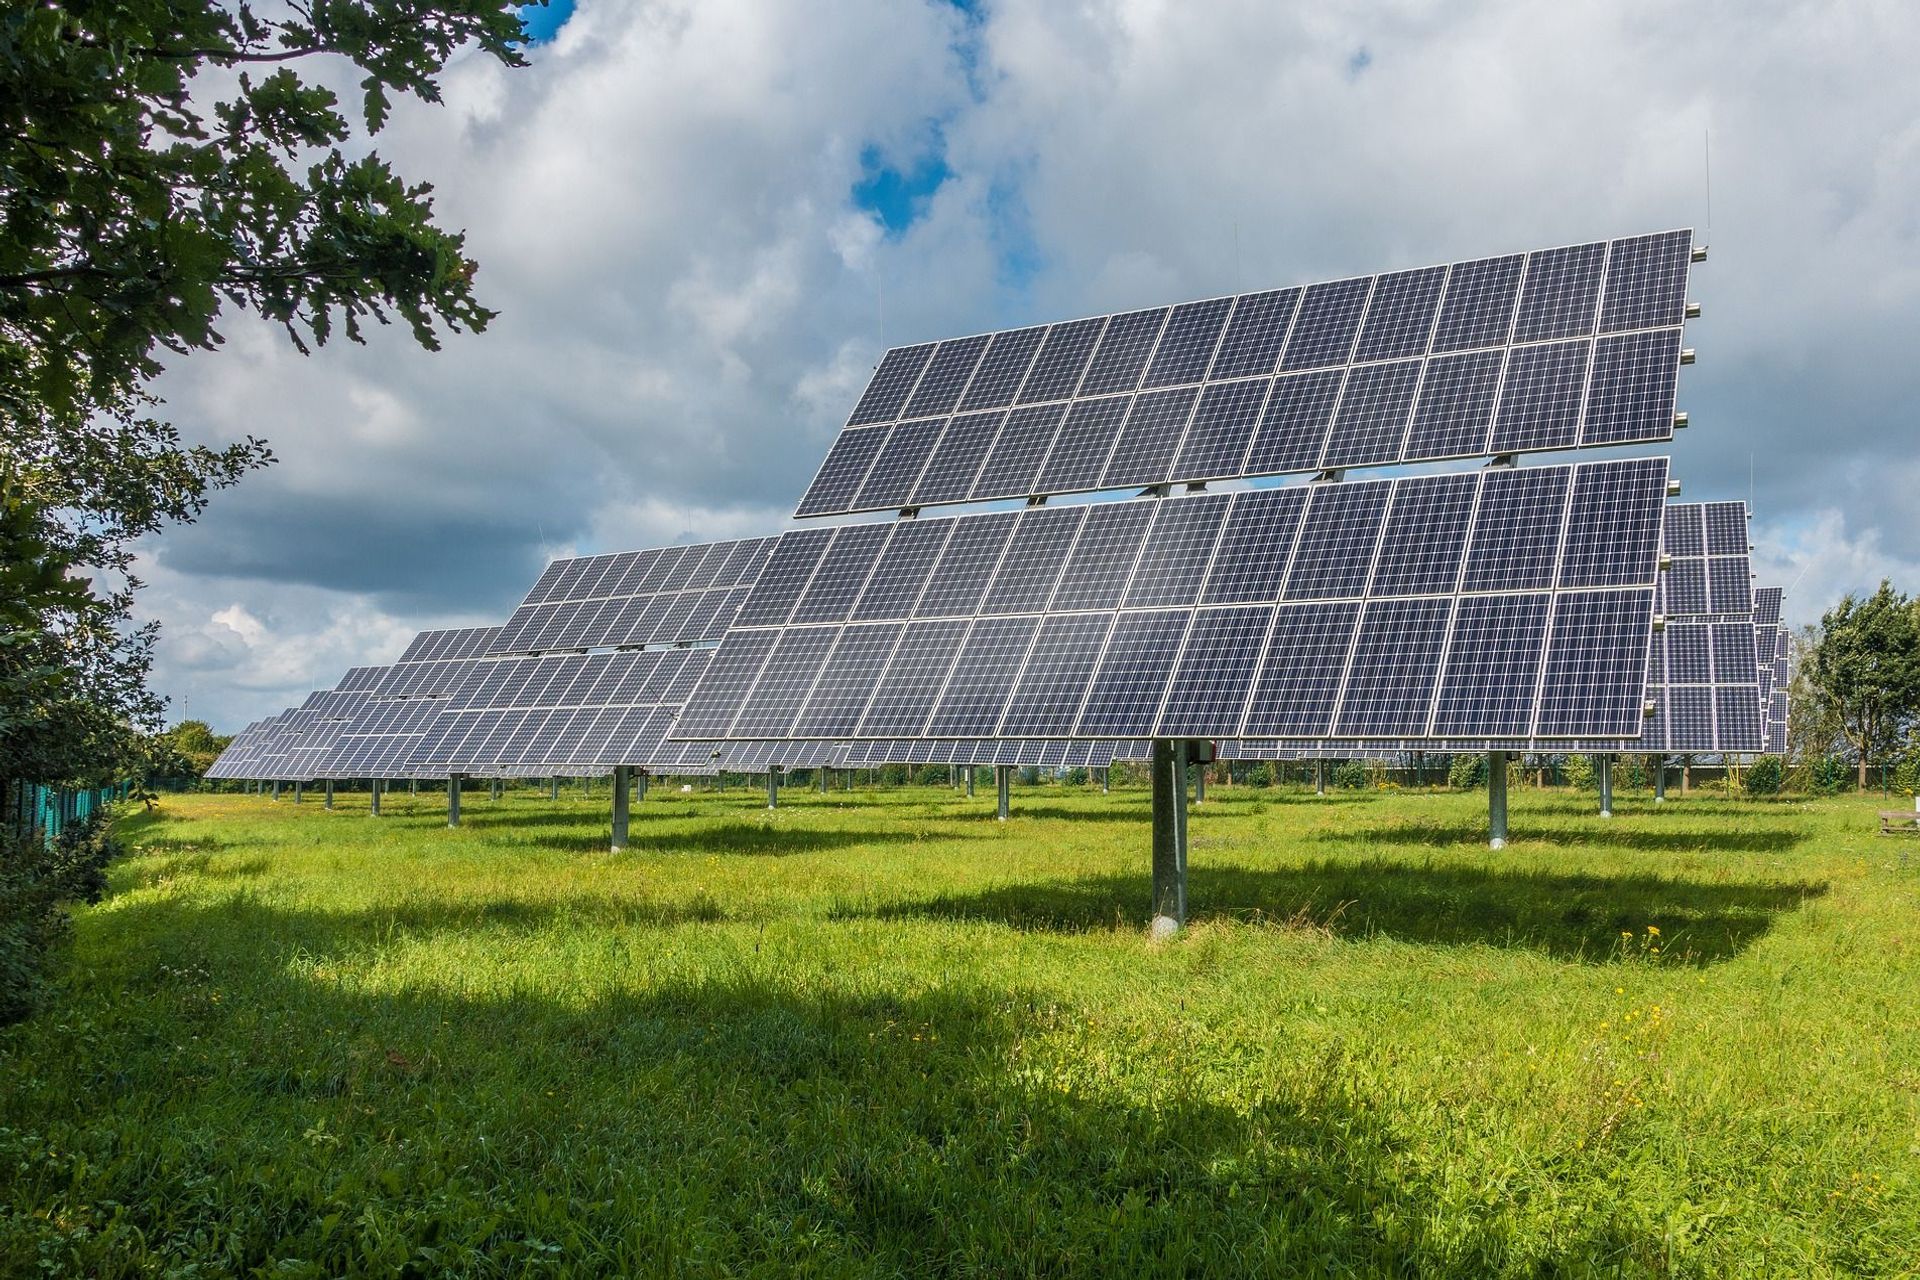 L'energia recollida a través de plaques solars és gairebé il·limitada